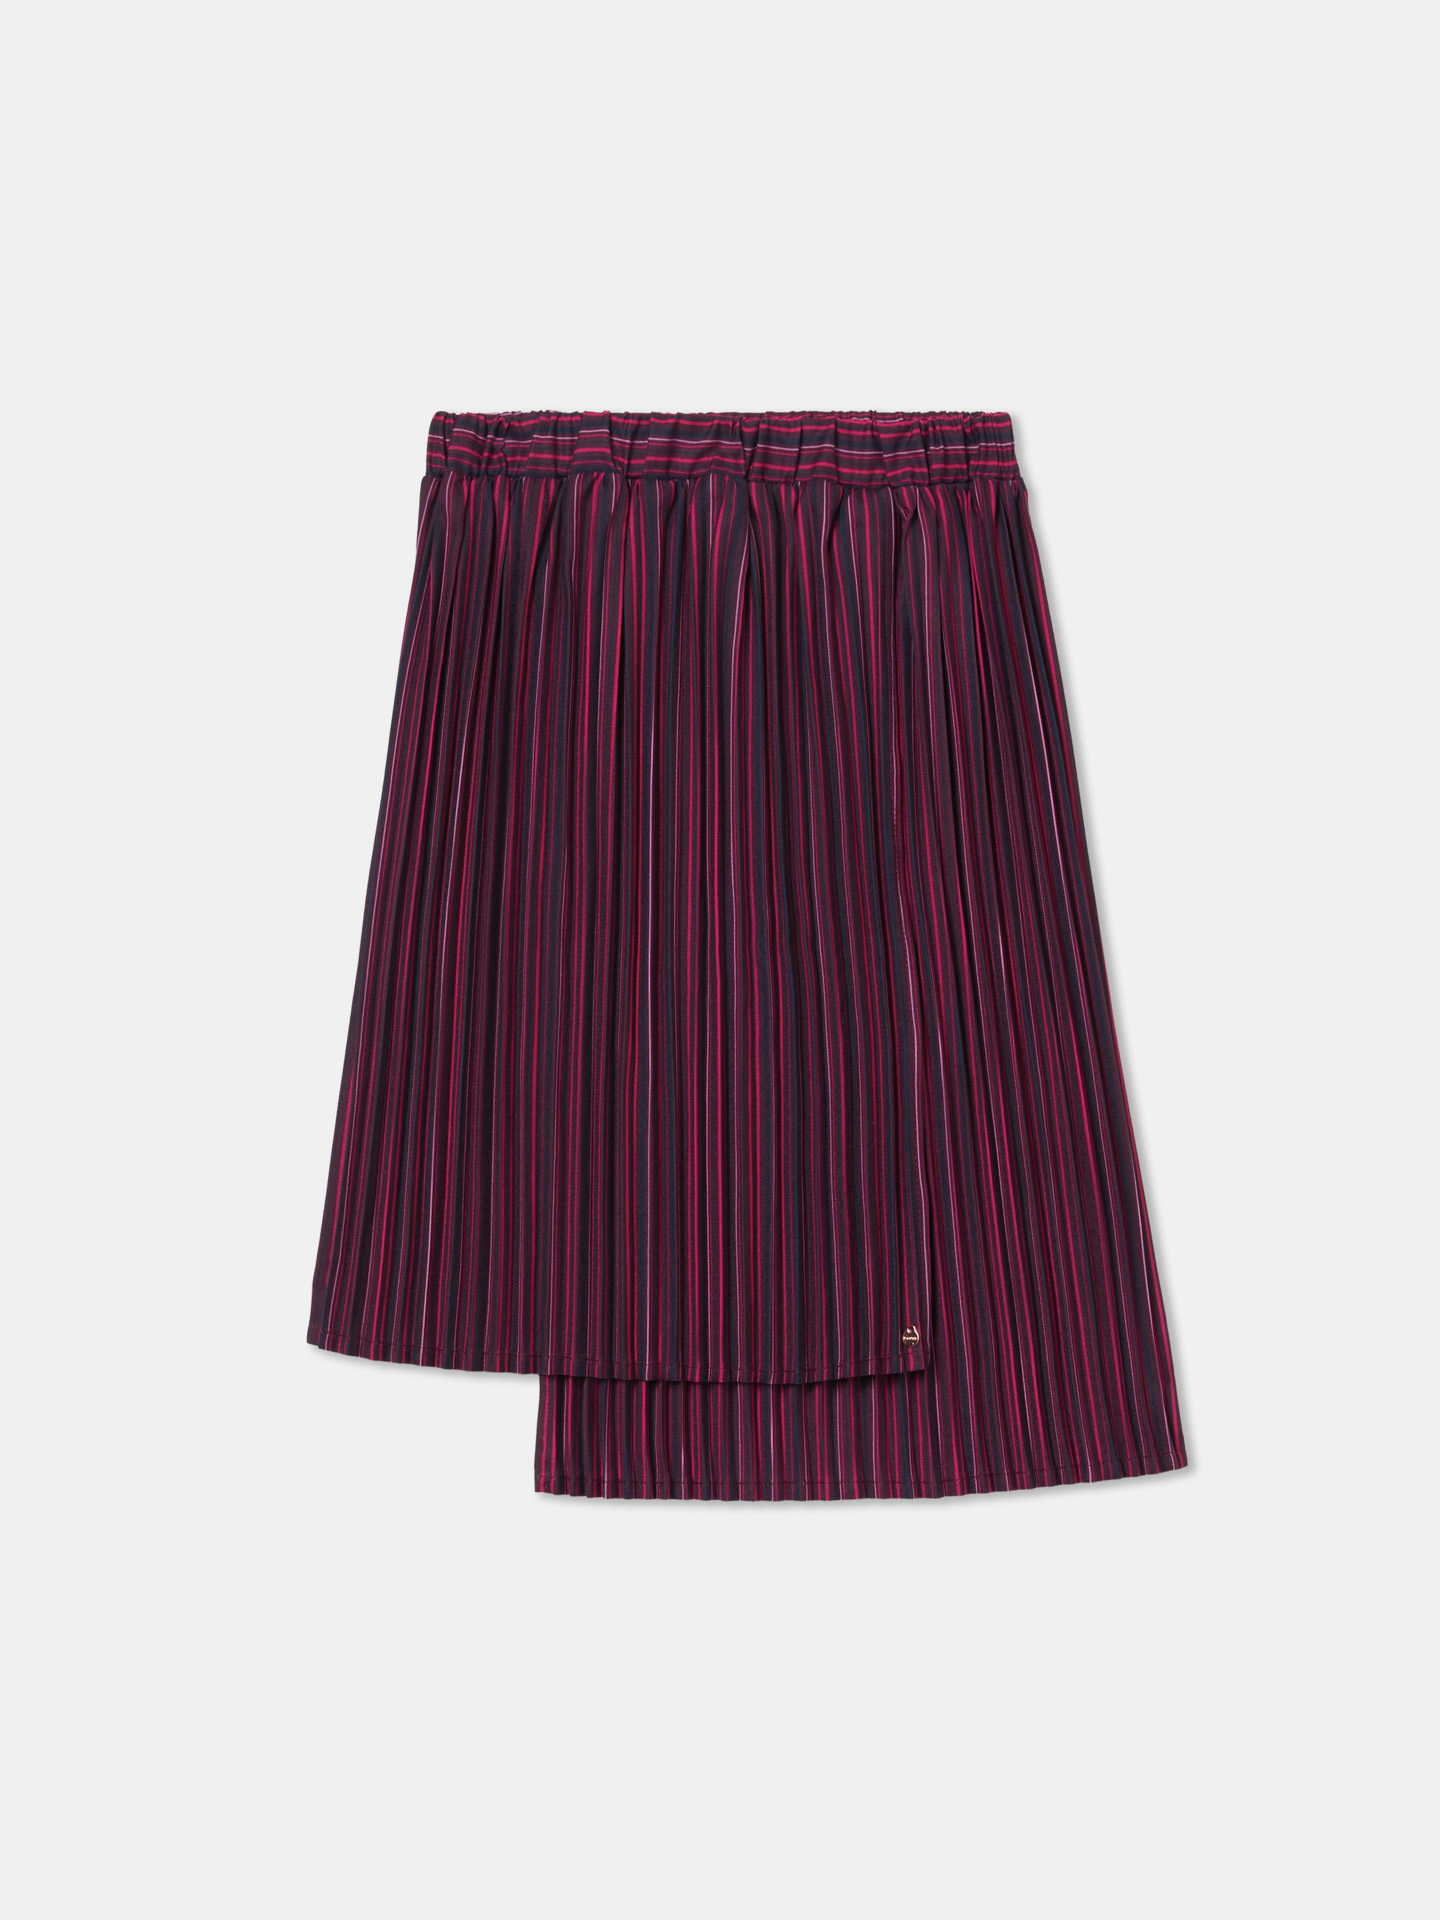 Skirt Stripes Casual Girl